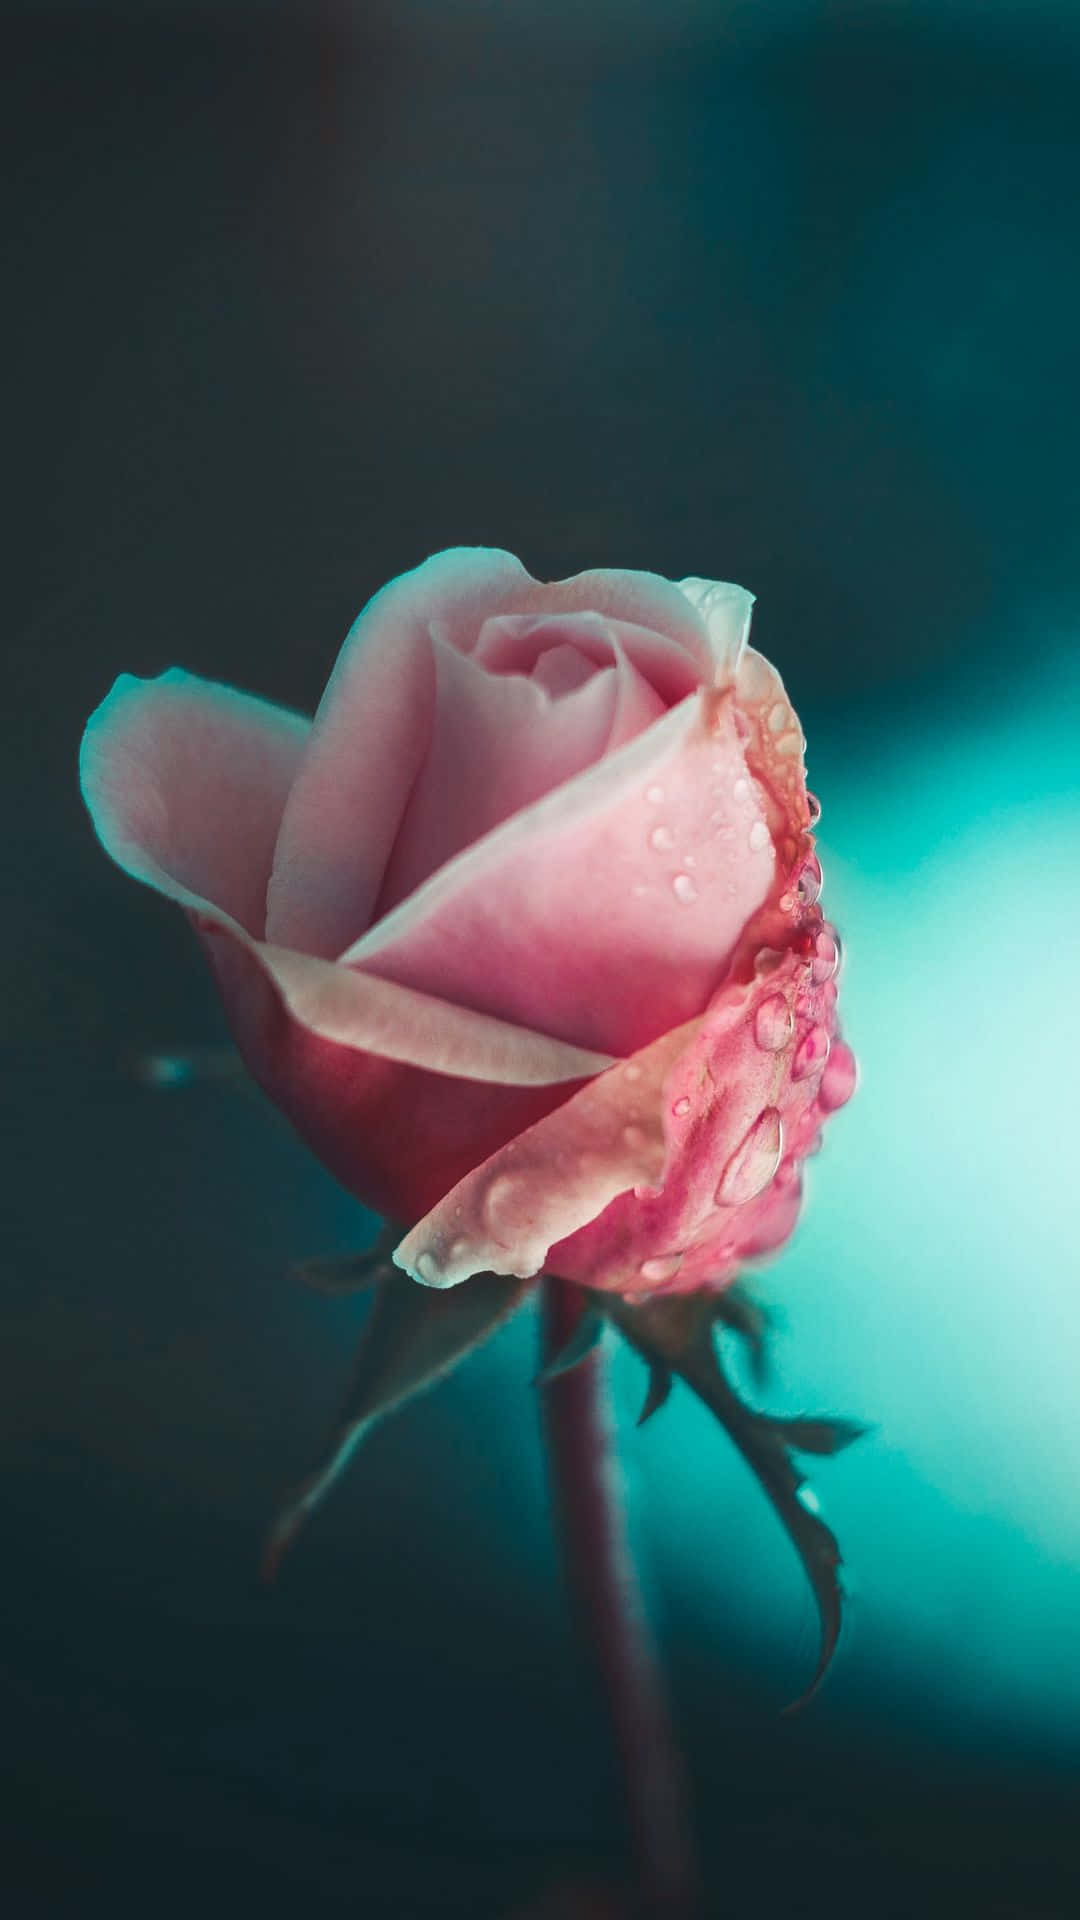 En pink rose med vanddråber på den. Wallpaper